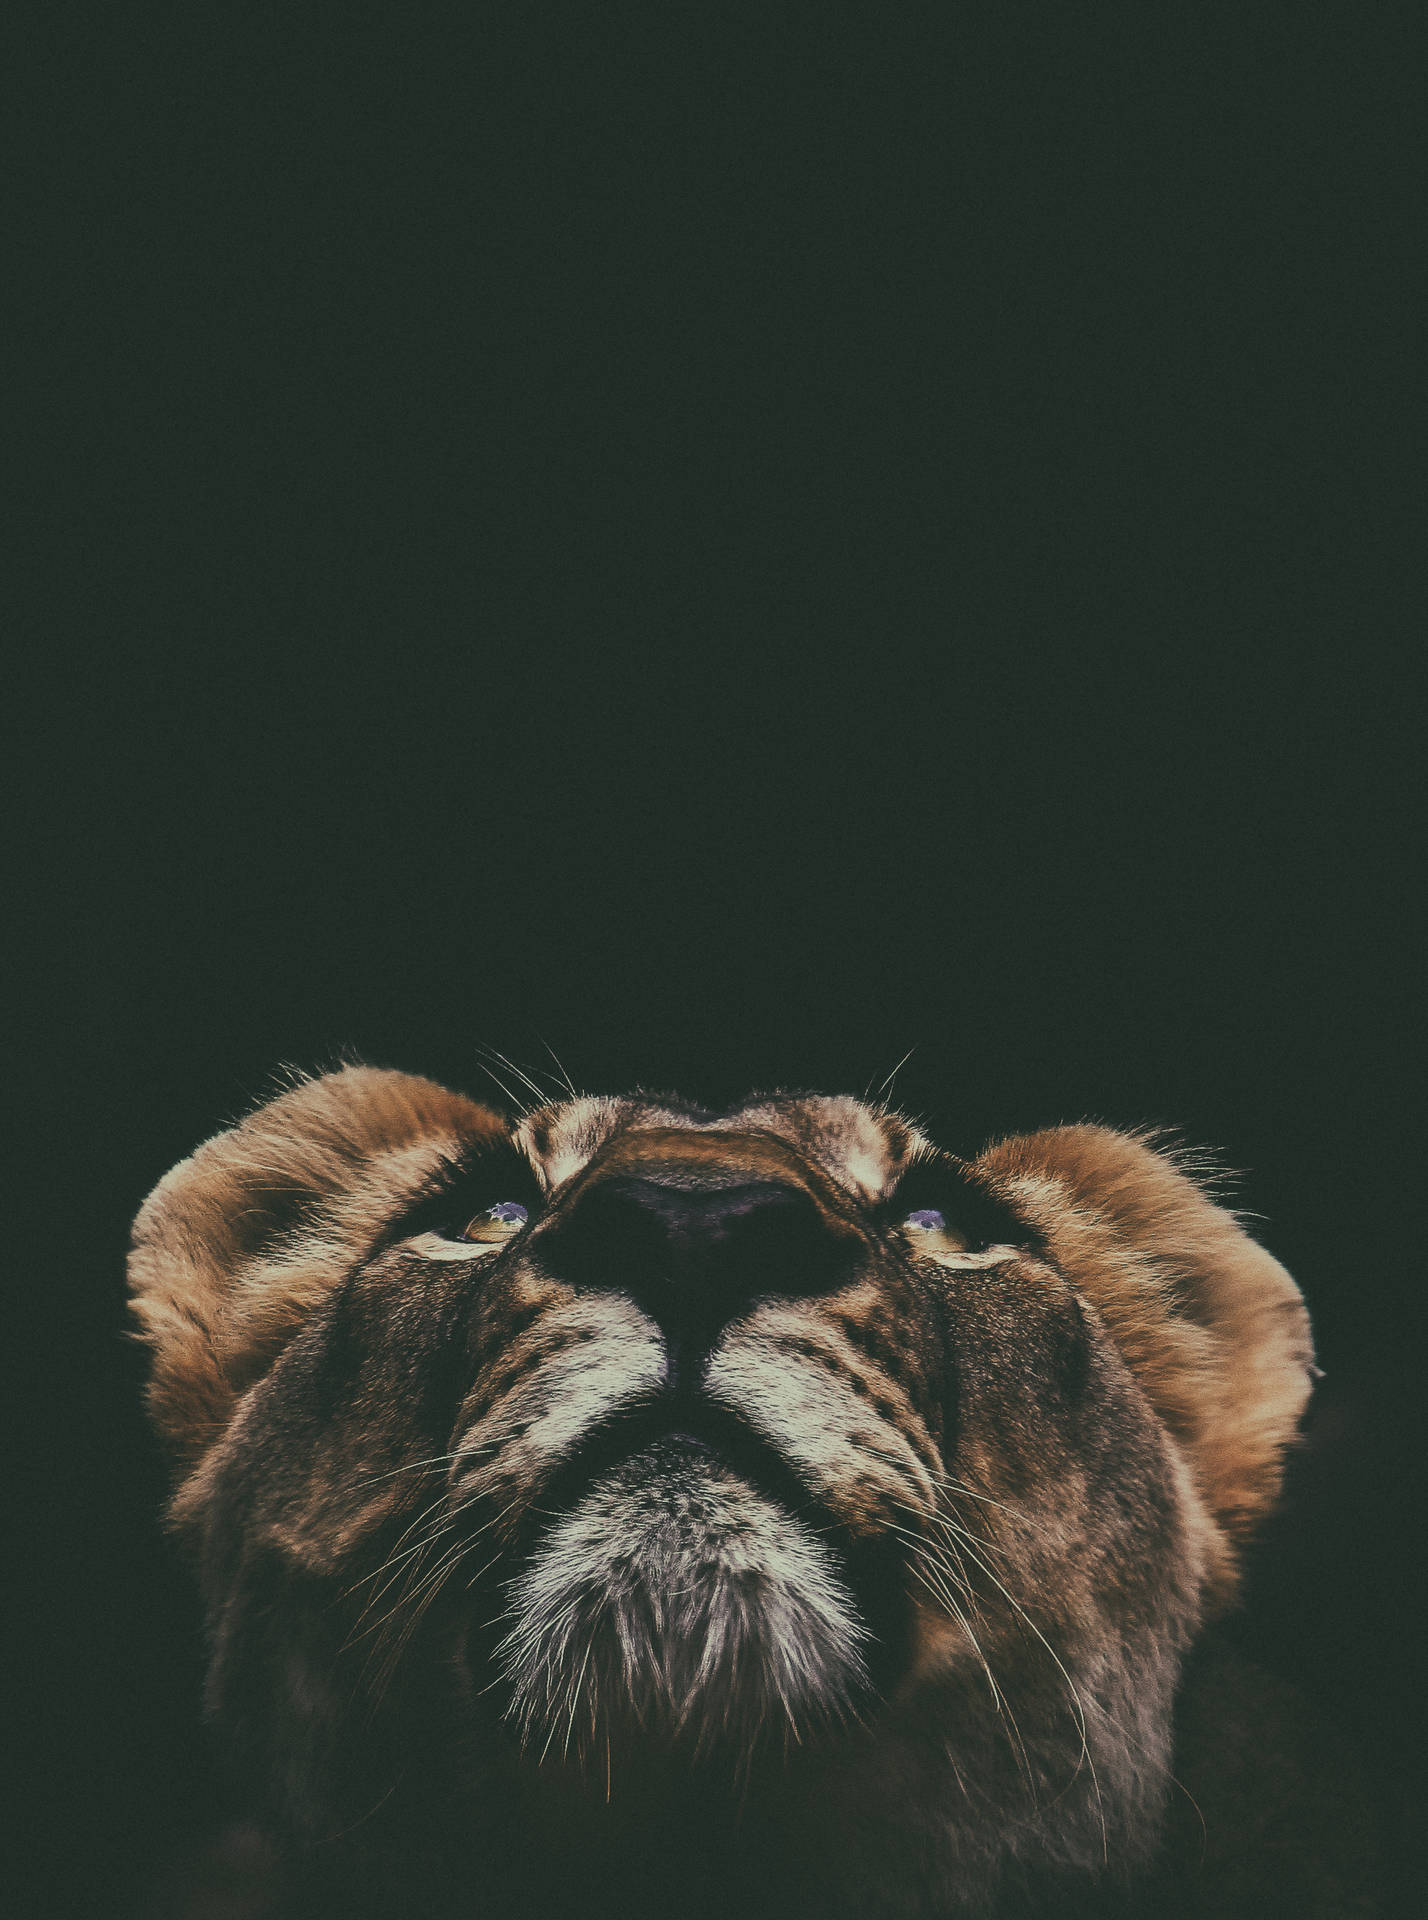 Lion Cub Portrait From Below Picture